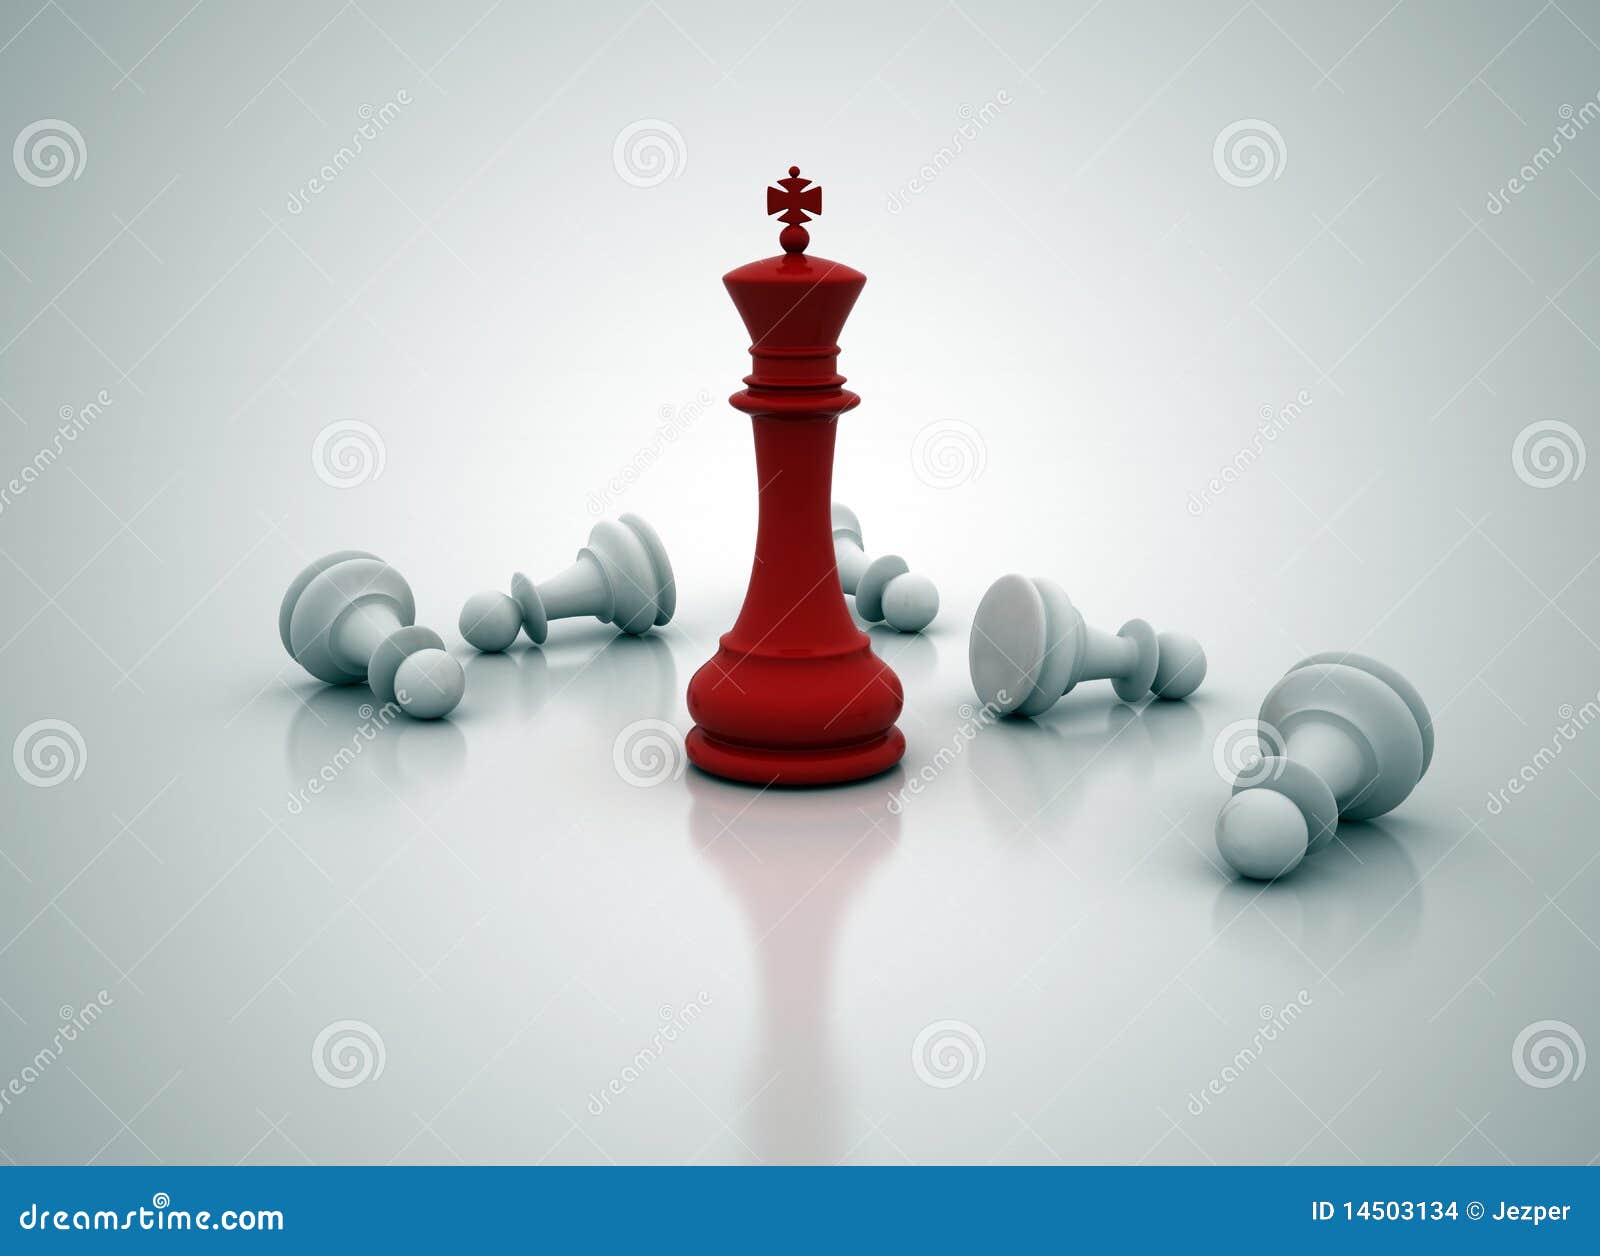 Posição do rei da xadrez ilustração stock. Ilustração de preto